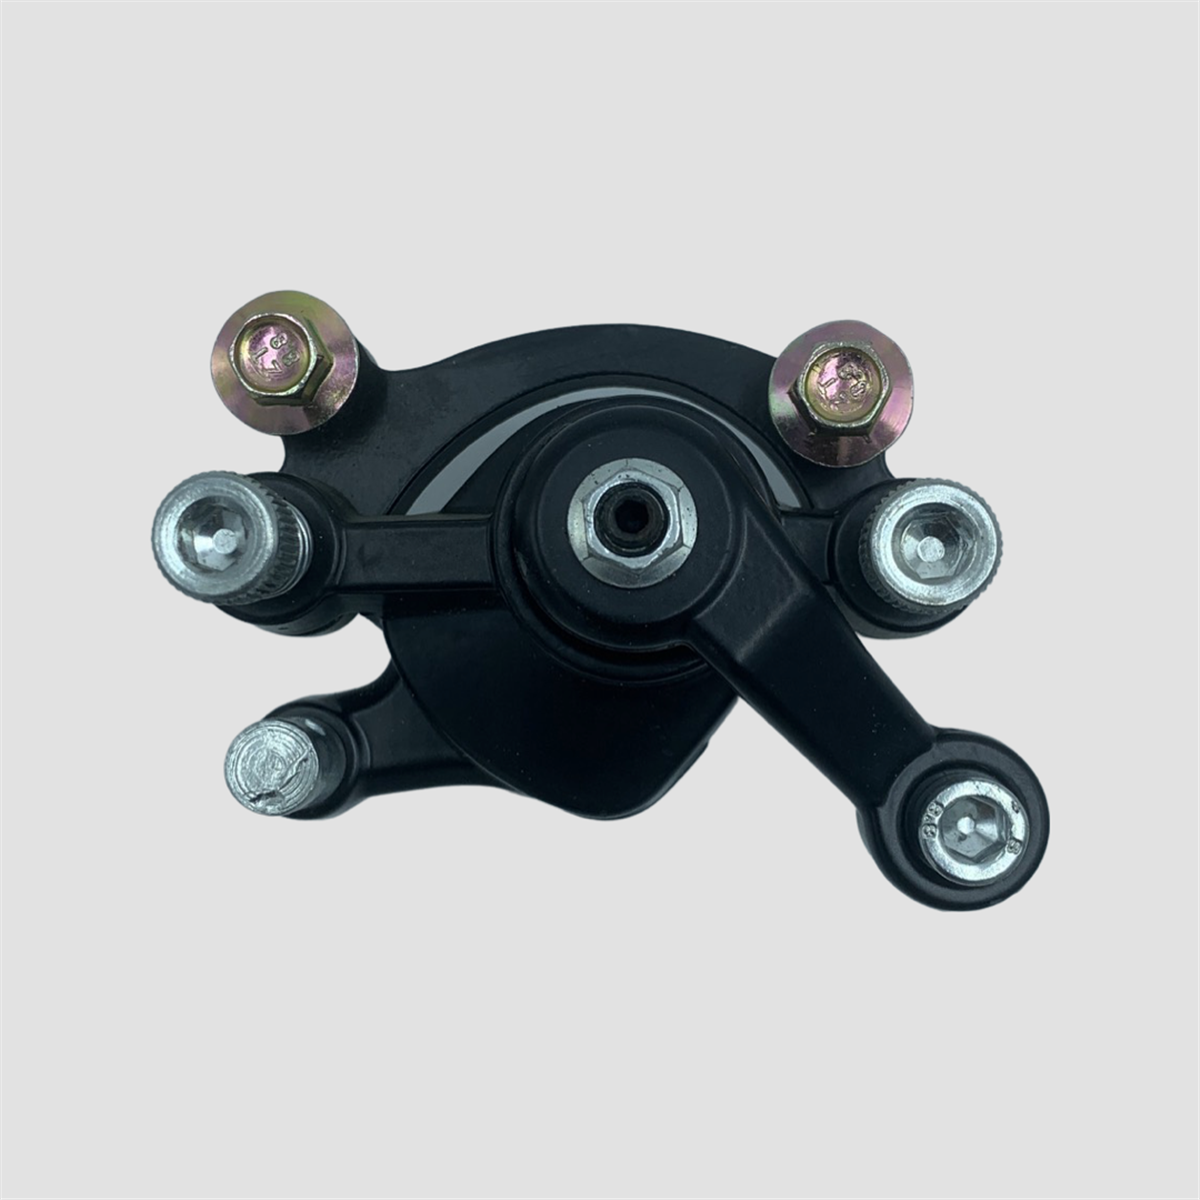 Etrier de frein mécanique | Smallmx - Dirt bike, Pit bike, Quads, Minimoto